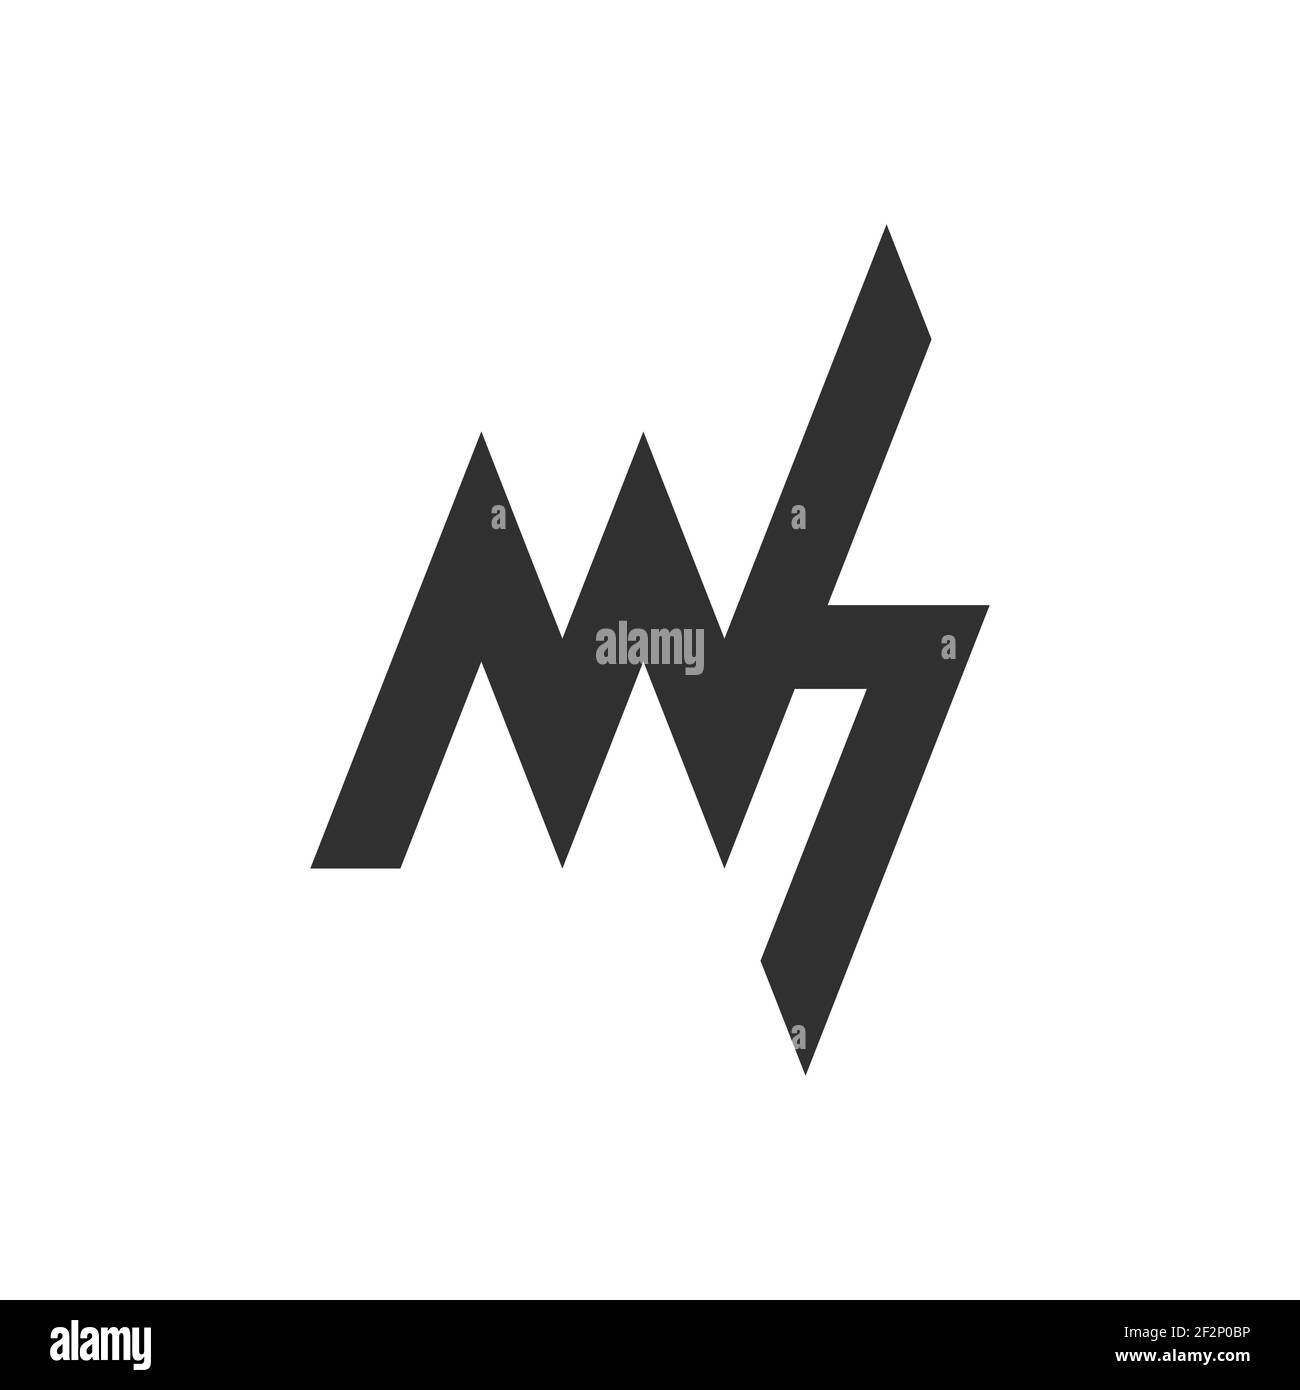 Premium Vector  Hm logo design